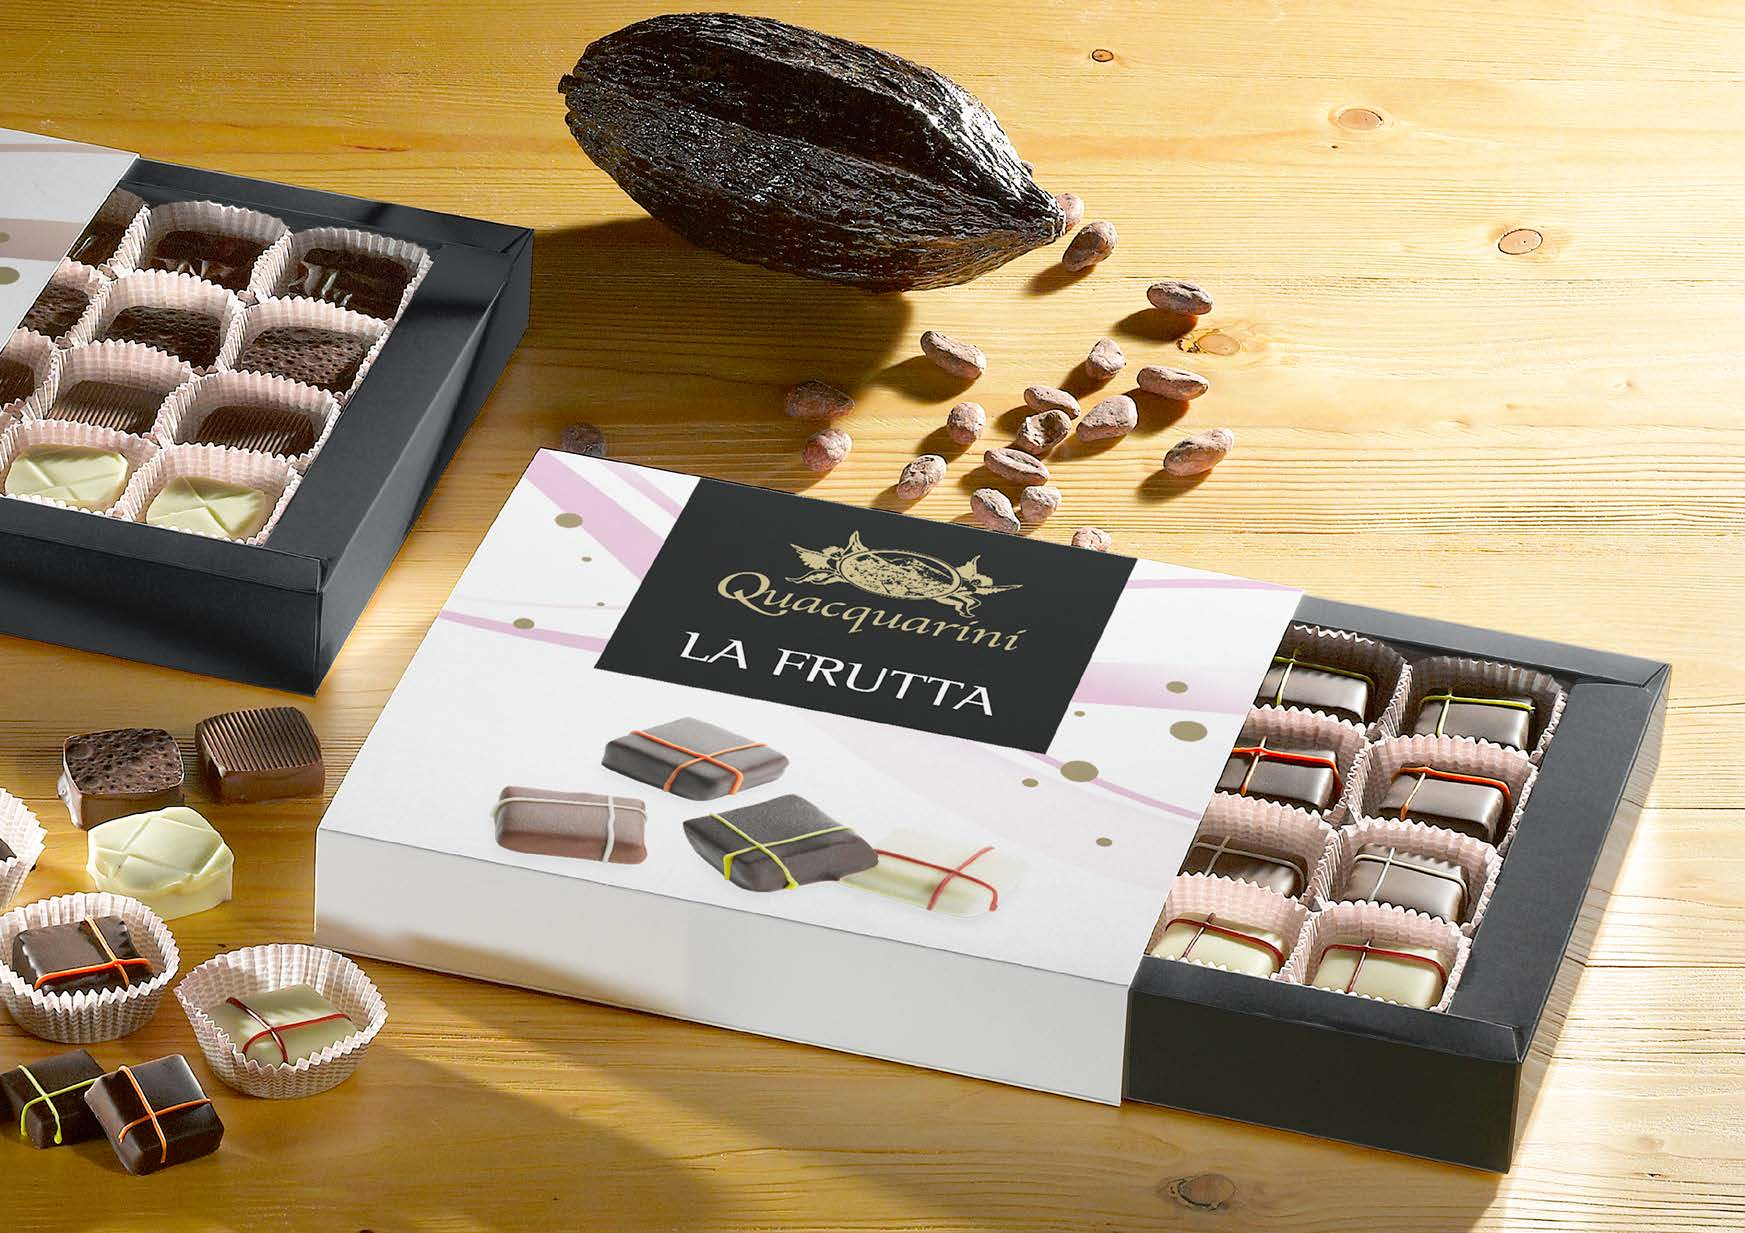 il Cioccolato I CIOCCOLATINI Granelle, Creme o Frutta: deliziosi cioccolatini in tre gustose interpretazioni.